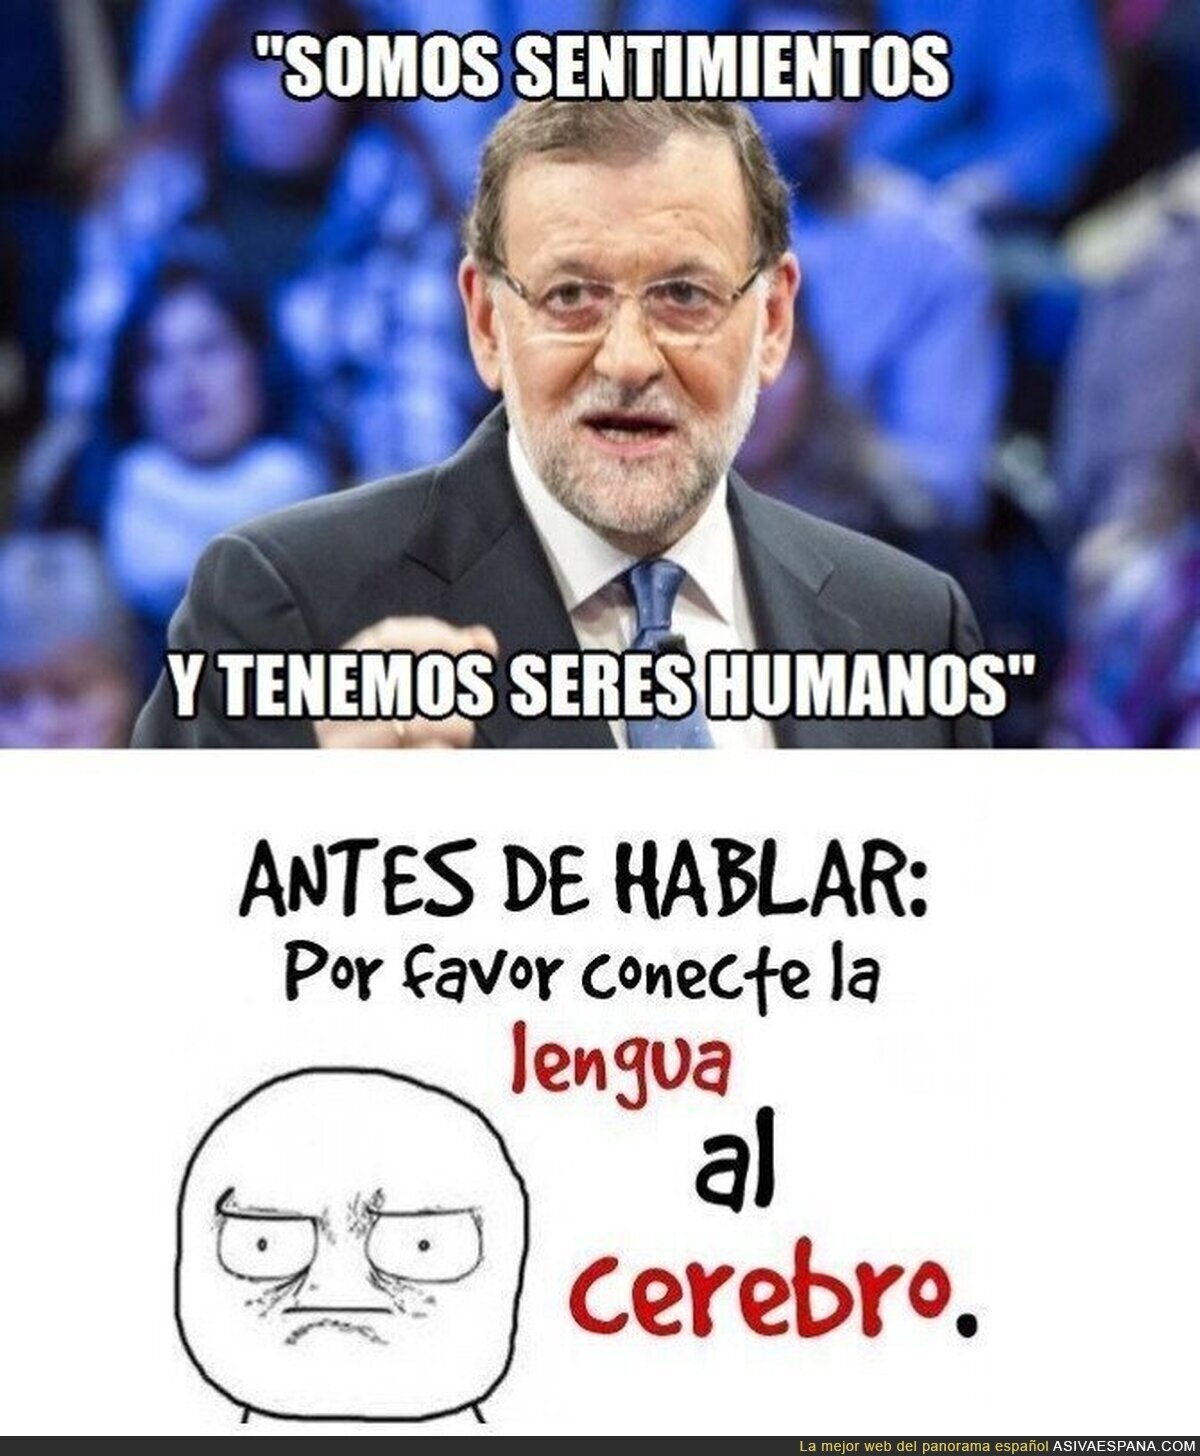 Rajoy, el filósofo del siglo XXI